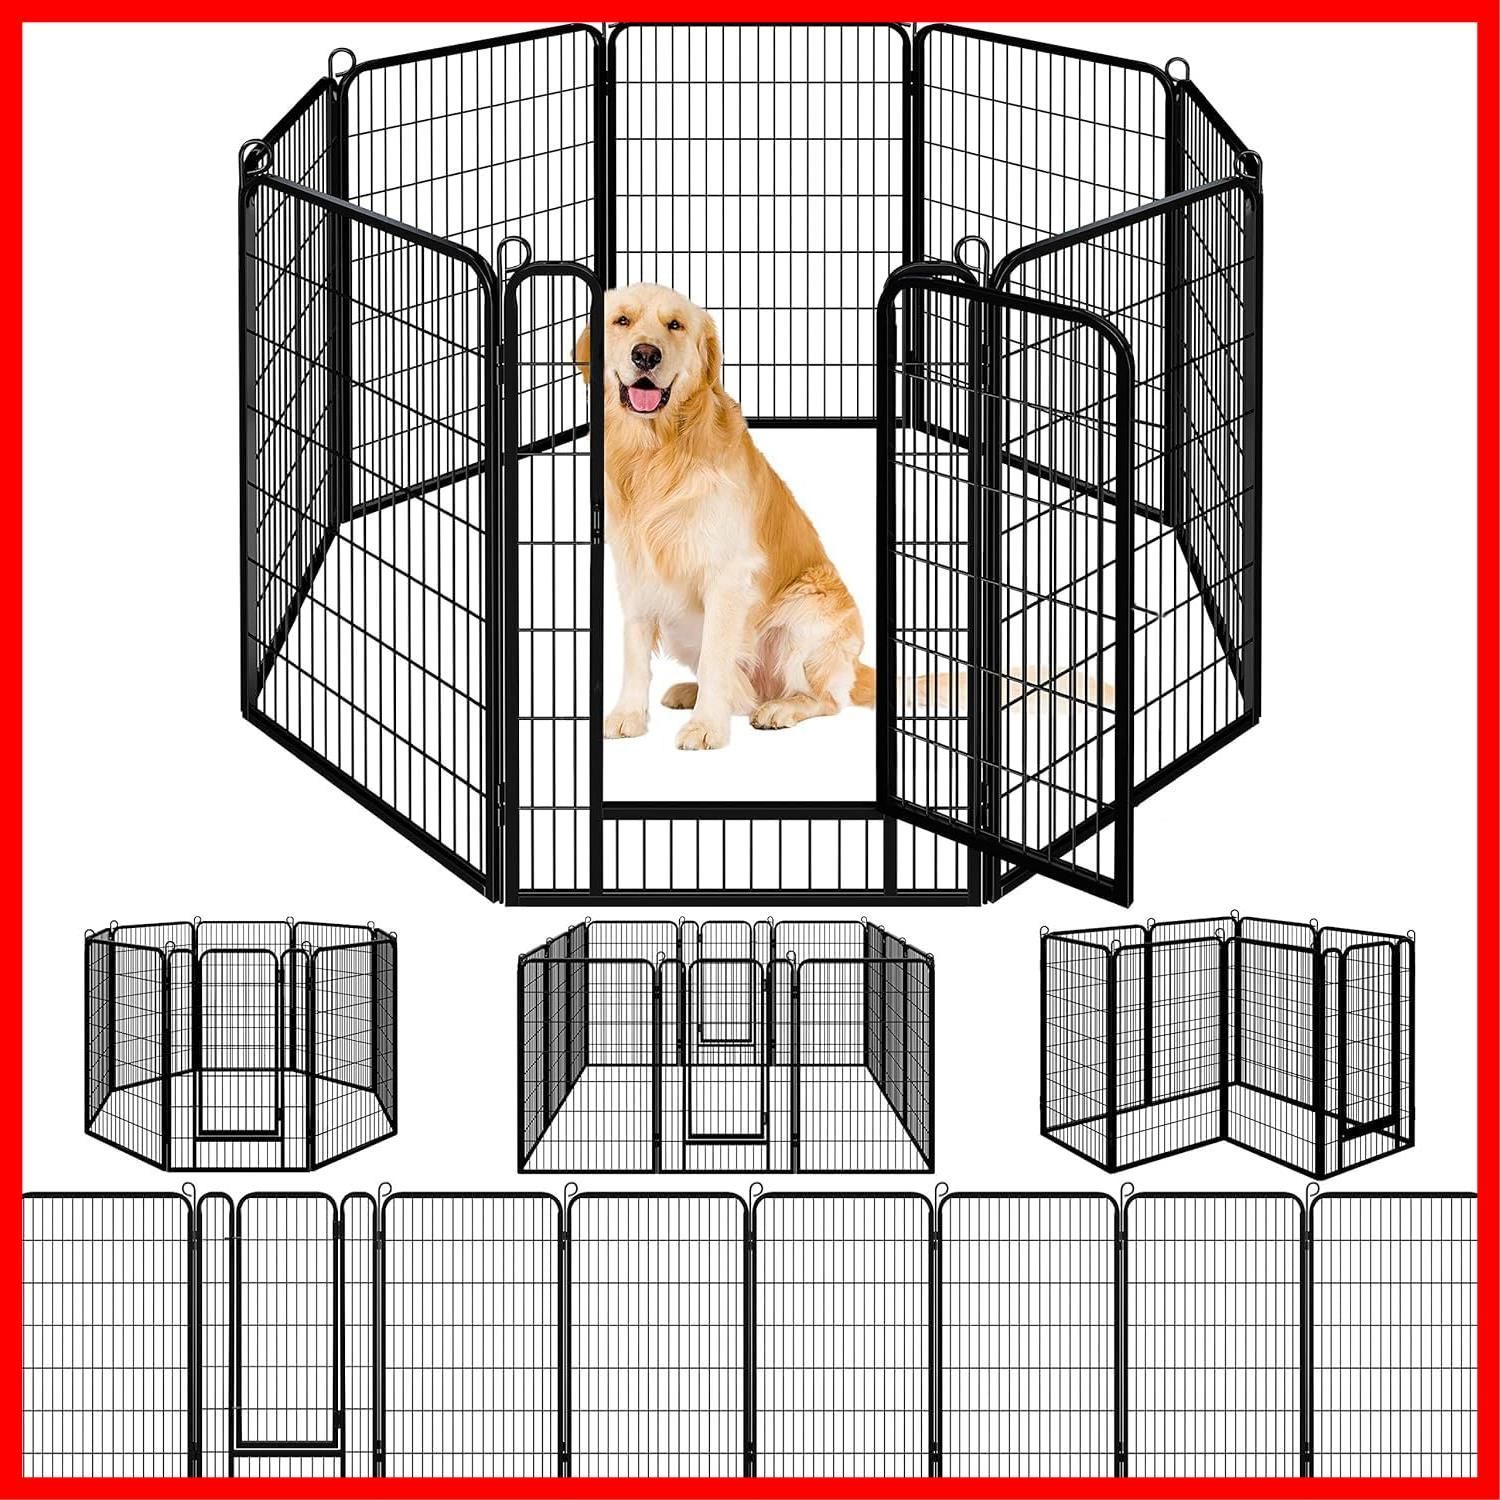 【特価セール】Dinah Aslop ペットフェンス 中大型犬用 ペットケージ パネル8枚 ペットサークル 四角ポール 折り畳み式 ペットフェンス  ゲージ トレーニング スチール製 複数の組み合わせ 室内室外兼用 犬小屋 ペット用品